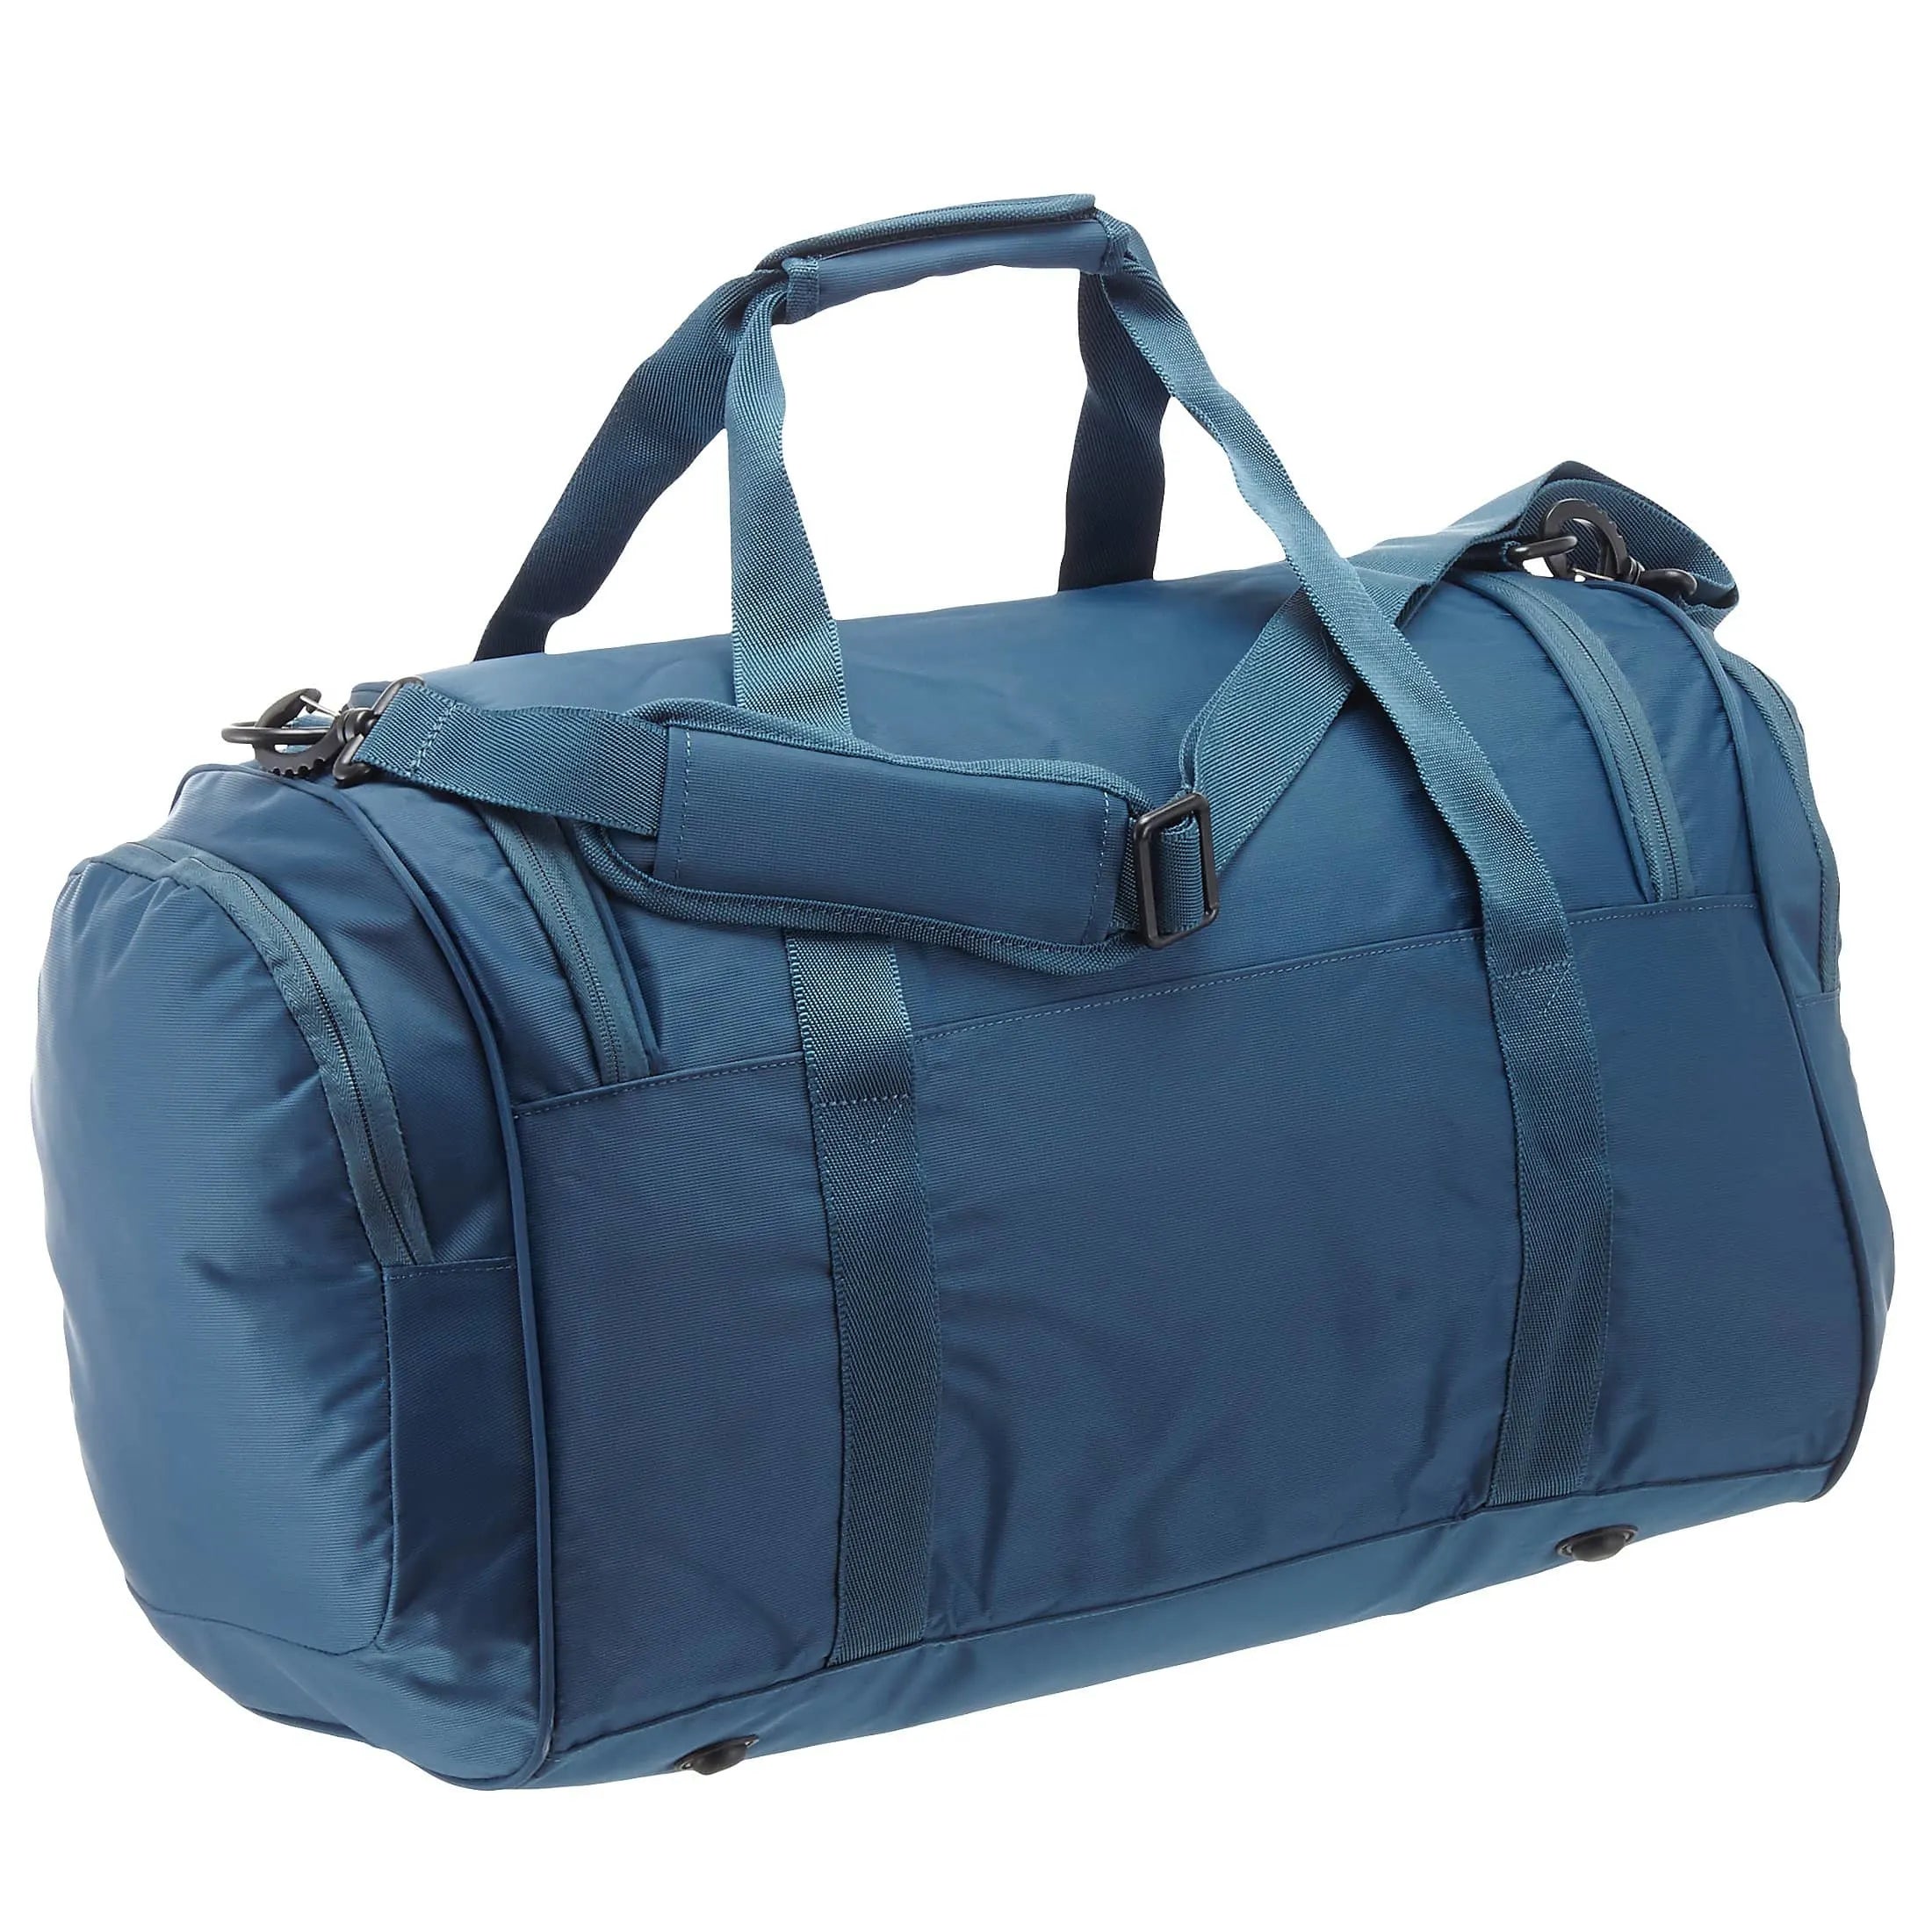 Roncato Speed travel bag 55 cm - nero